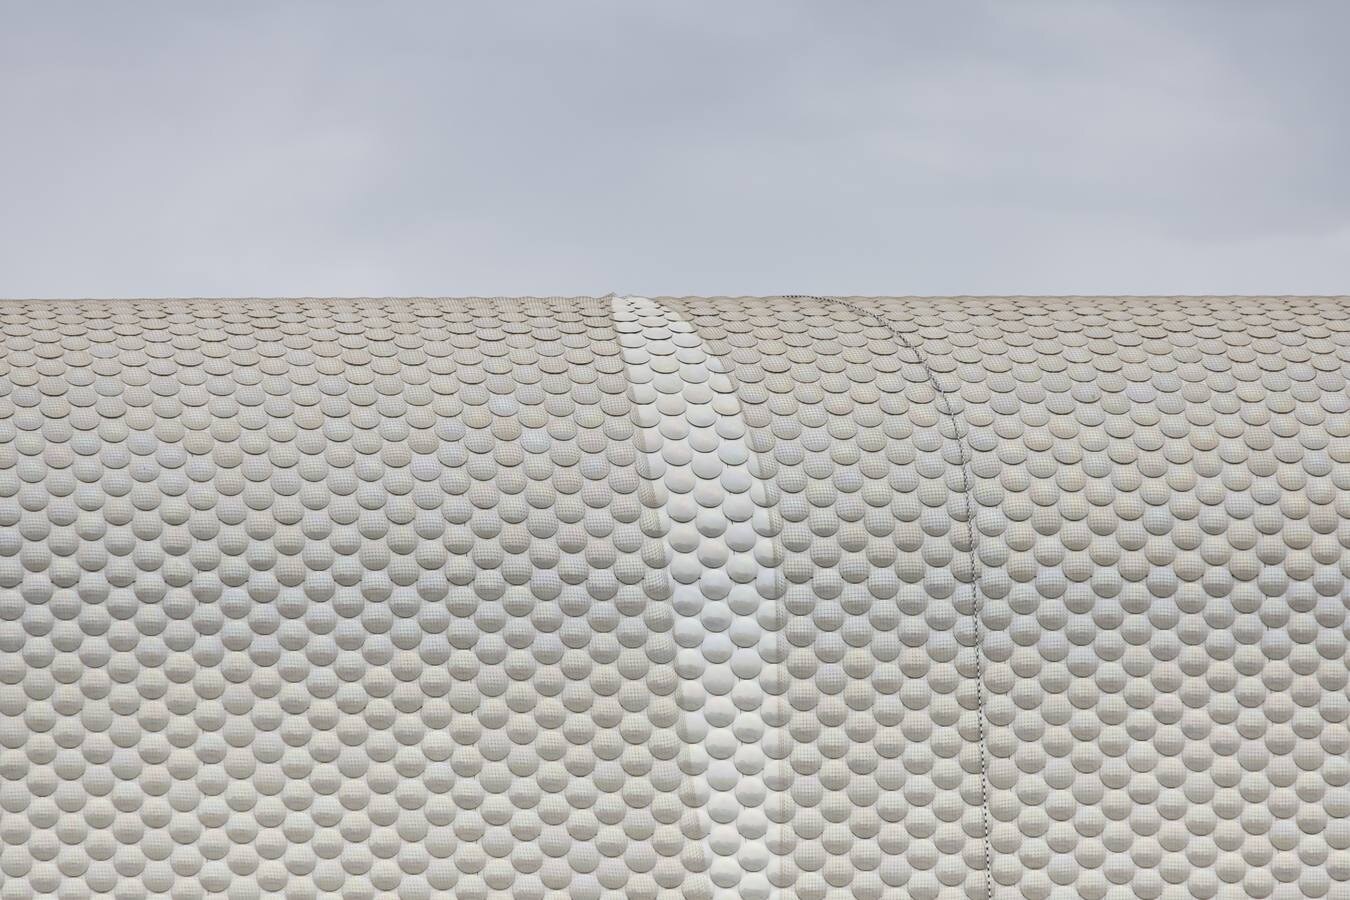 Fotos: Trabajos de instalación de una red para cubrir la fachada del Centro Botín por los problemas detectados en las piezas de cerámica que cubren la estructura